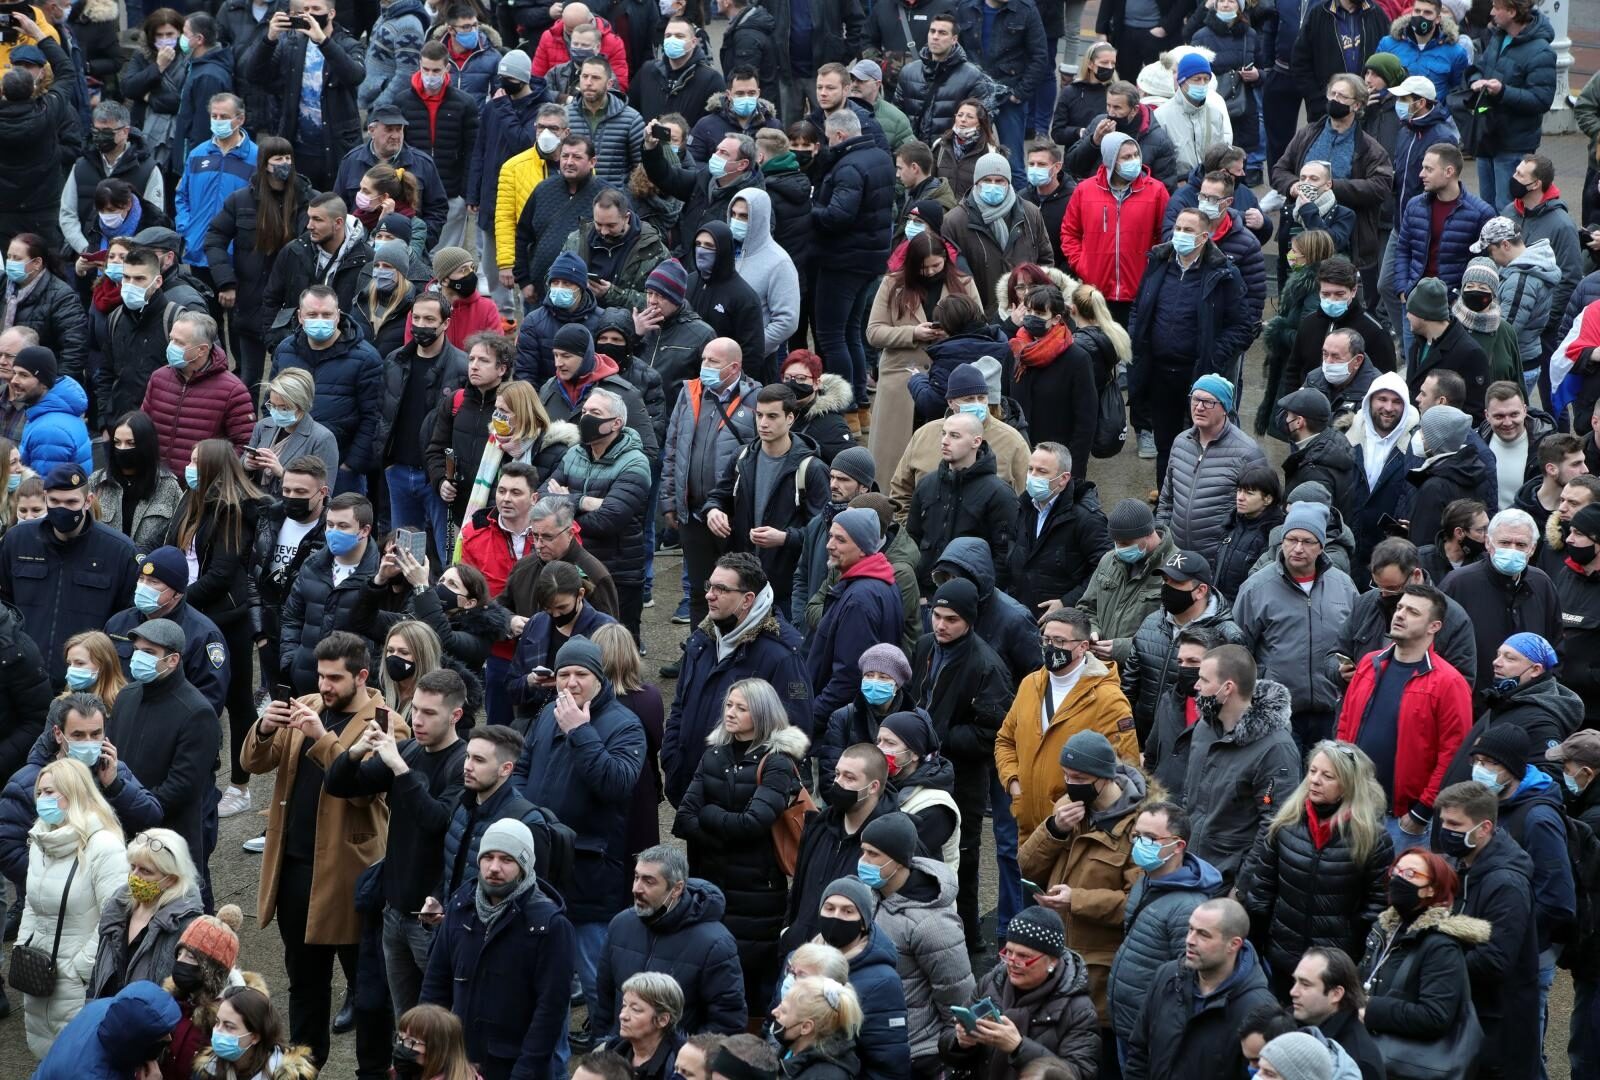 Zagreb: Pogled na glavni Trg i mnoštvo okupljenih na prosvjedu protiv ekonomskih mjera